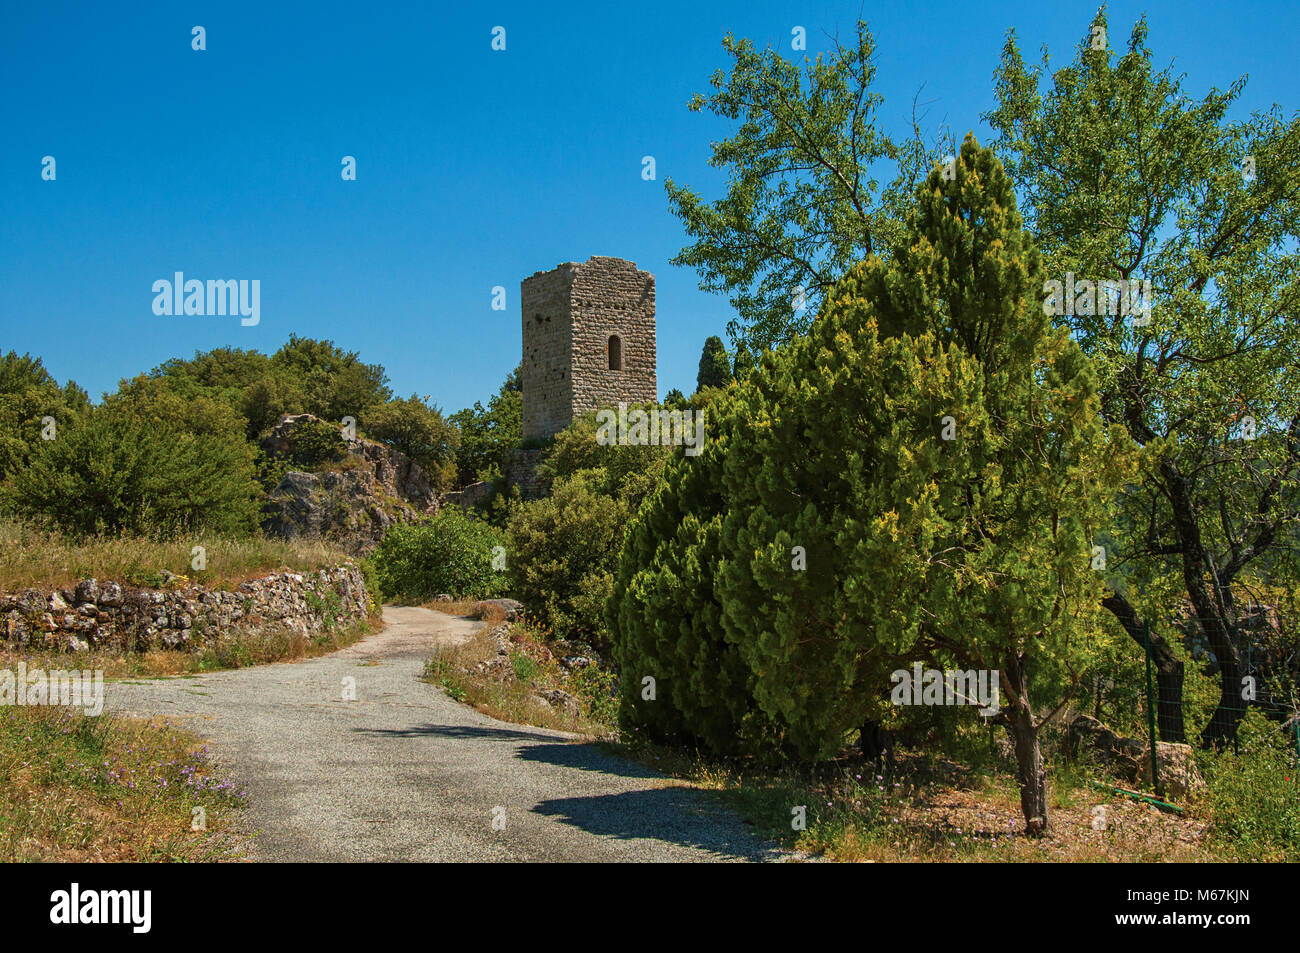 Vue de la tour en haut de la colline et le chemin à l'arbre près de Chateaudouble, un village calme avec origine médiévale. Région de la Provence, dans le sud-est de la France. Banque D'Images